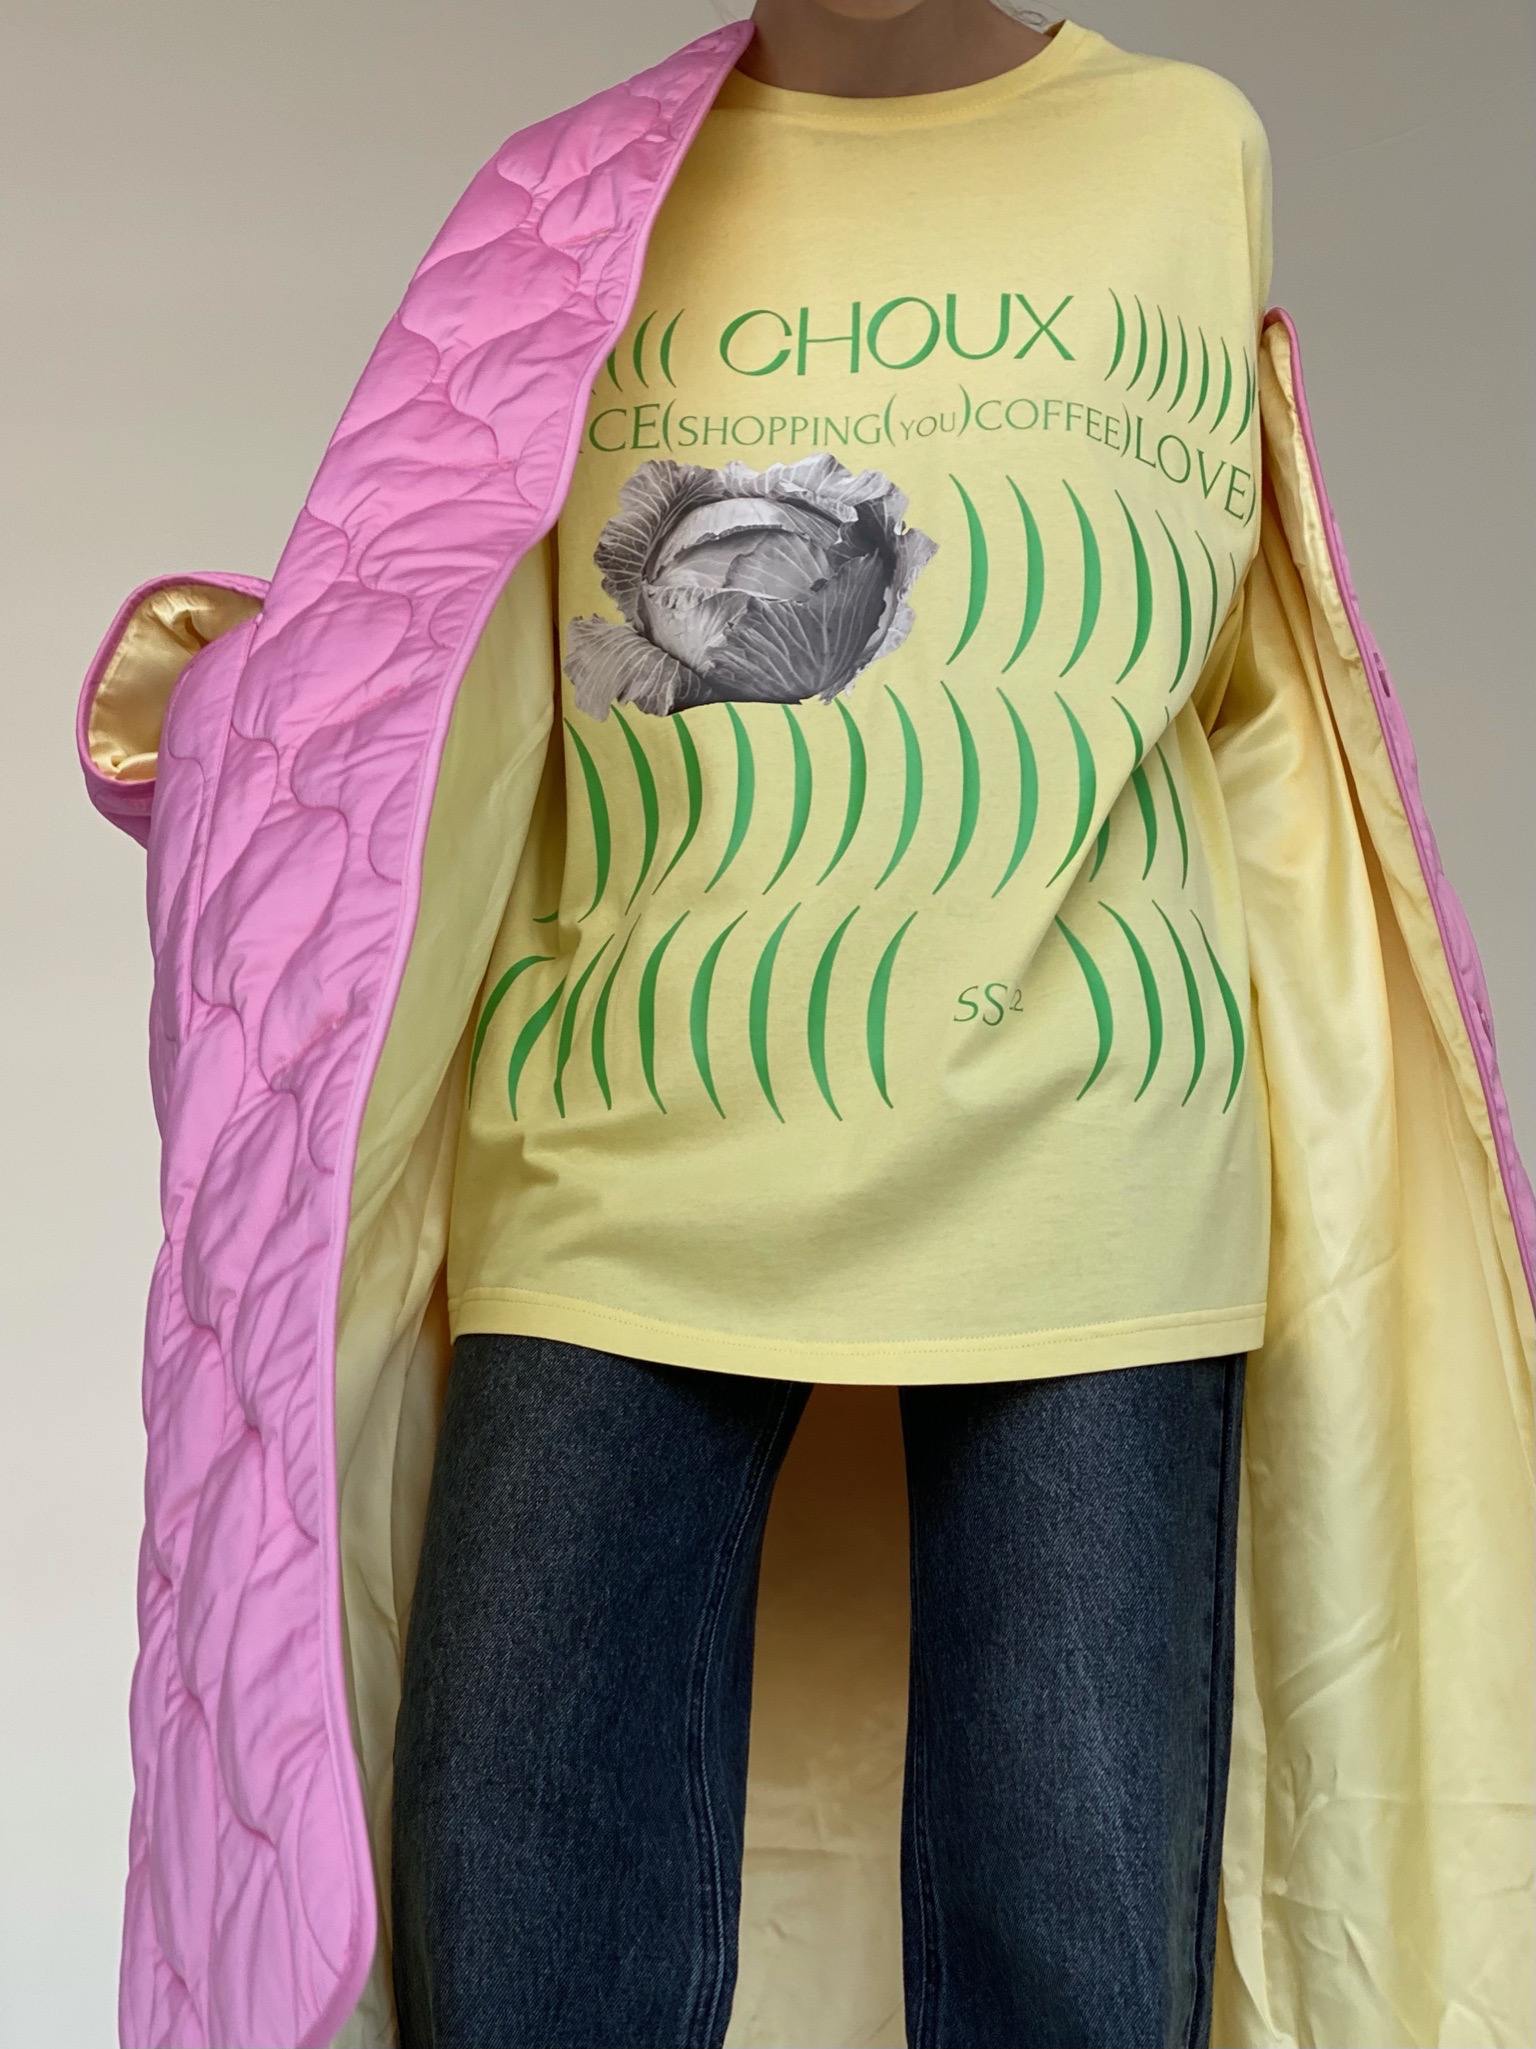 Новый российский бренд Choux представил дебютную коллекцию (фото 12)